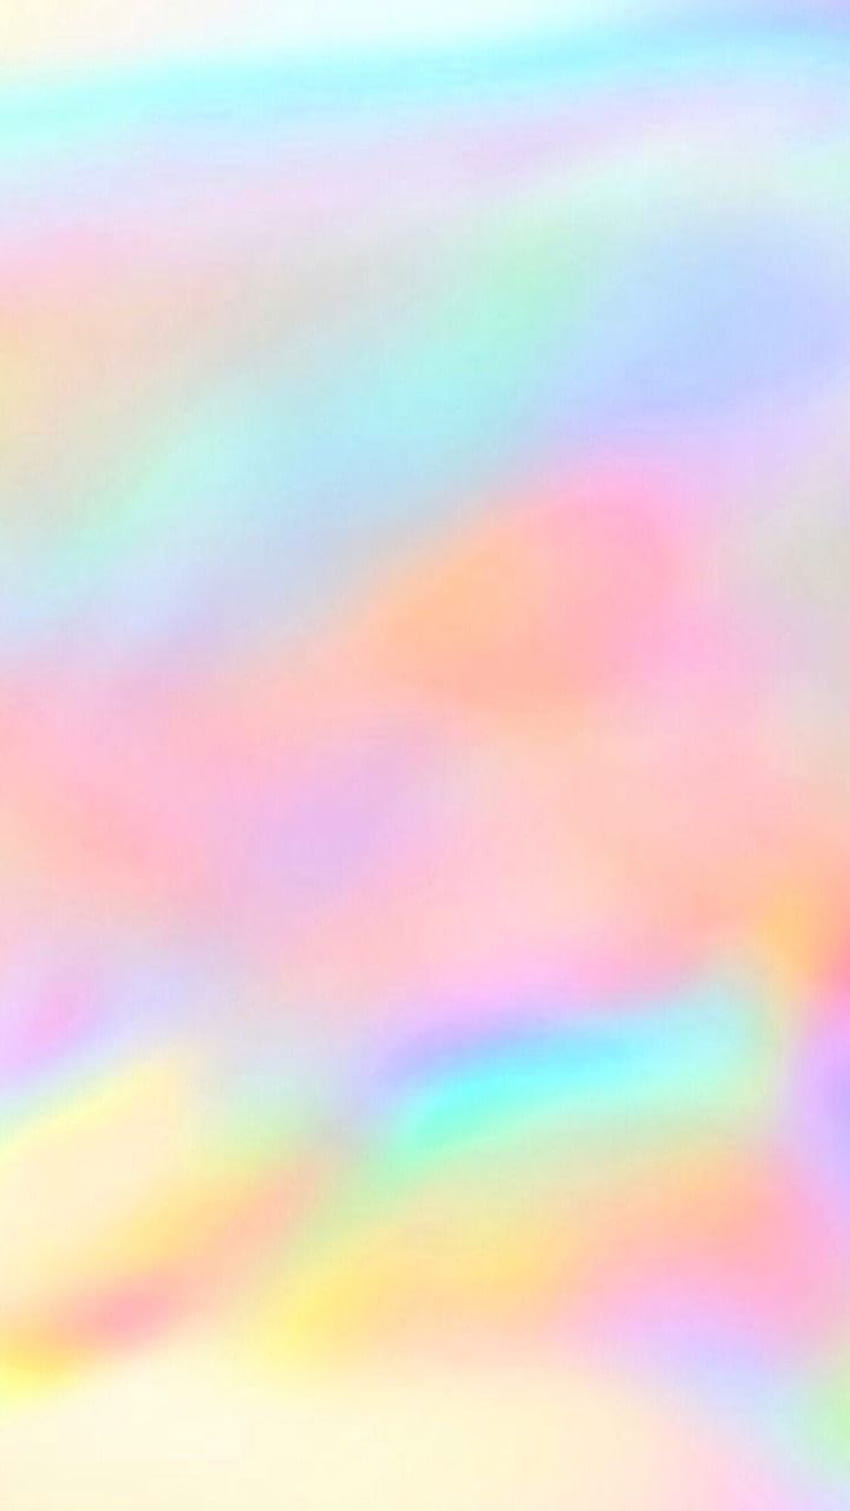 rainbow rainbow lockscreen rainbow lockscreens rainbow rainbow rainbow background rainbow background. Hari ayah, Latar belakang, Foto abstrak, Pastel Rainbow HD phone wallpaper